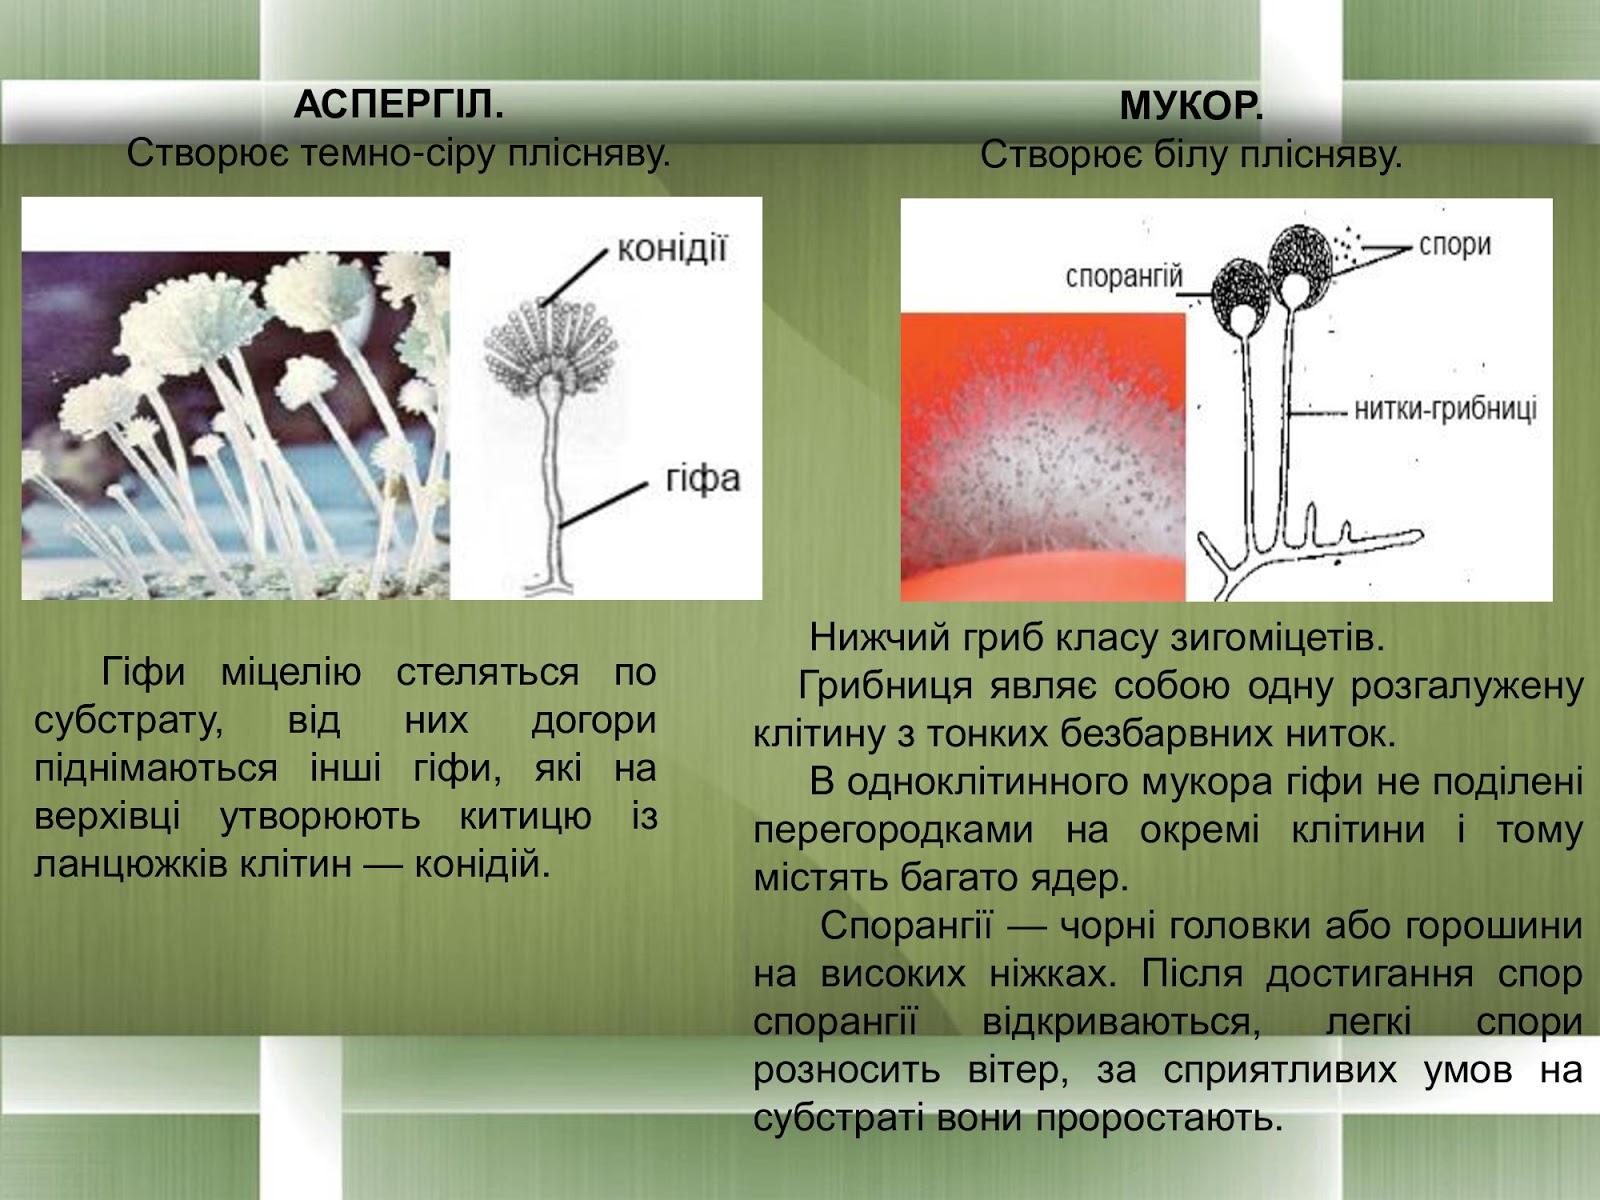 Размножение мукора. Цикл развития гриба мукора. Зигоспоры мукор. Строение и цикл развития мукора. Гриб мукор жизненный цикл.